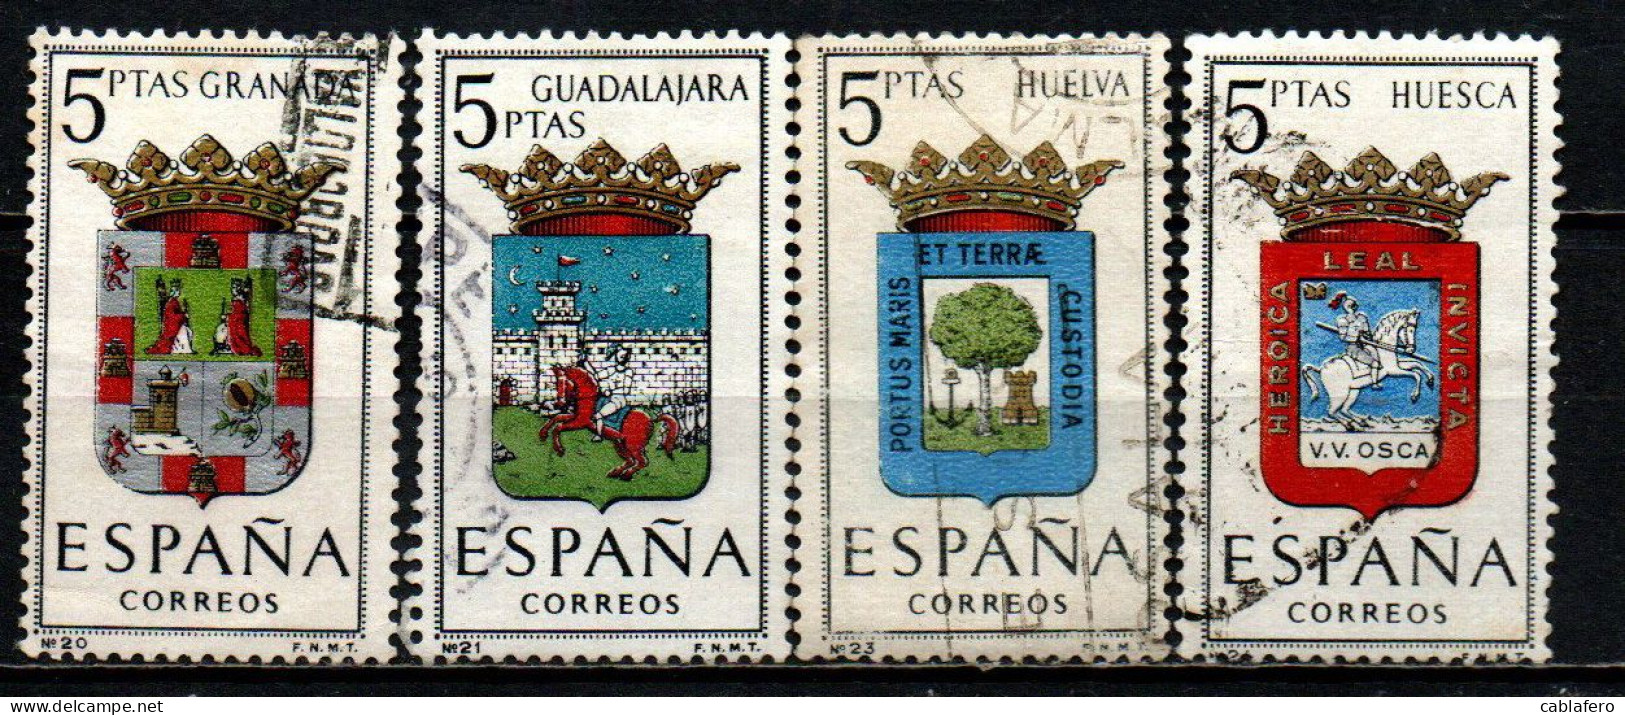 SPAGNA - 1963 - STEMMI DELLE PROVINCE SPAGNOLE: GRANADA, GUADALAJARA, HUELVA, HUESCA - USATI - Used Stamps